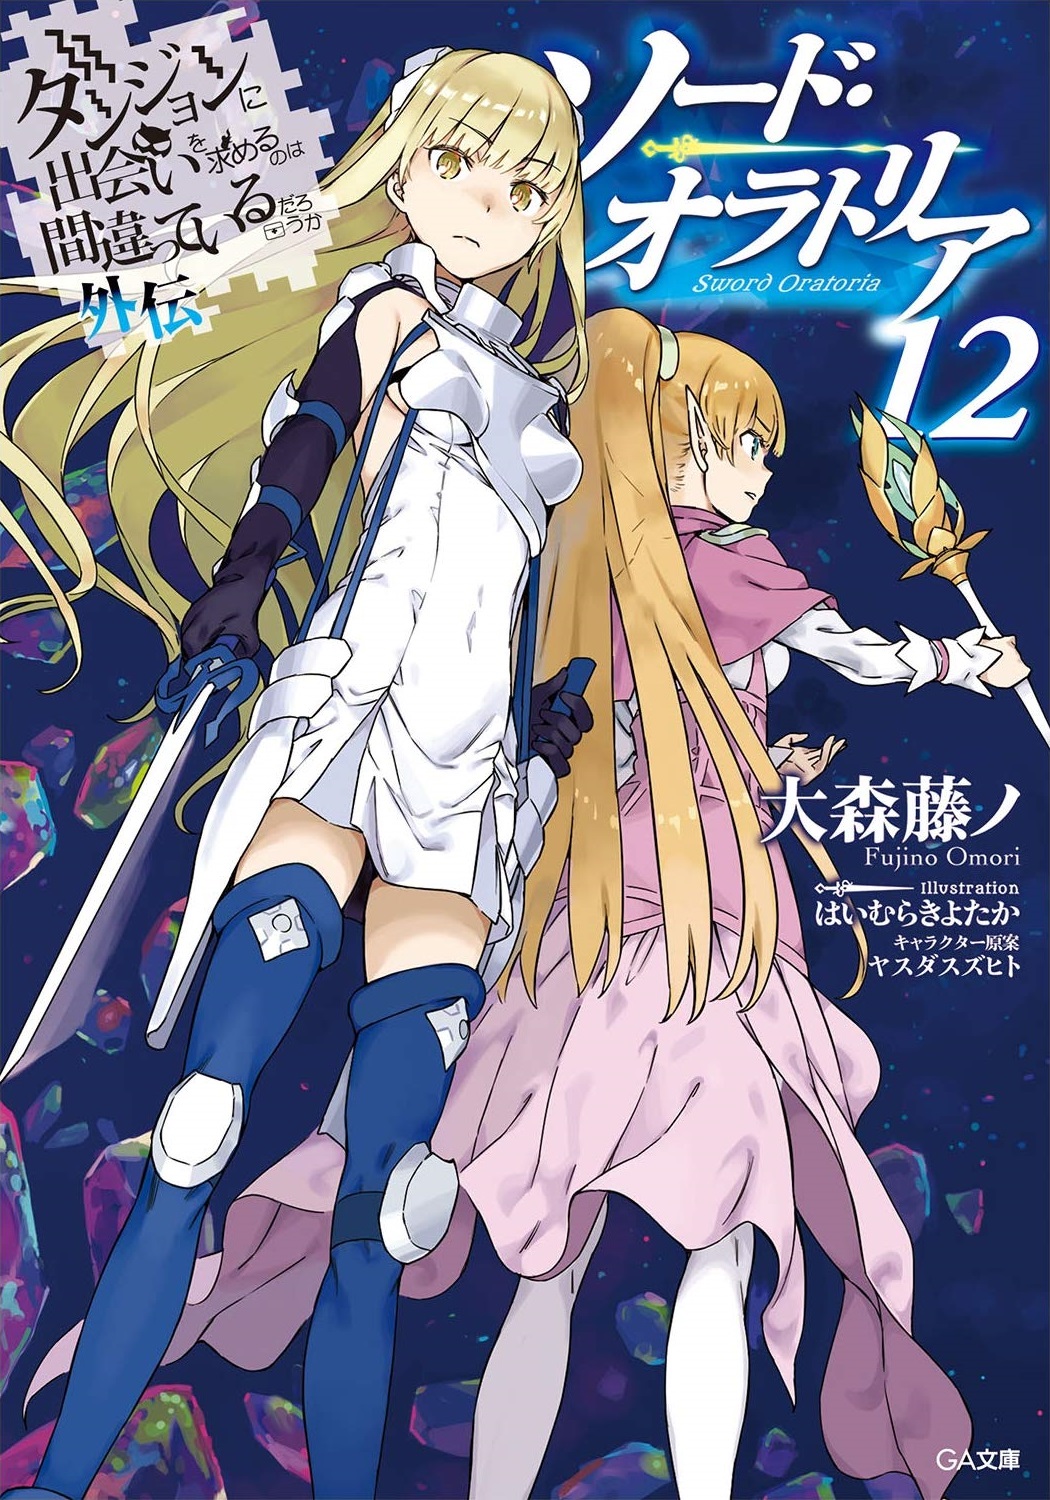 DanMachi Light Novel Volume 4 Cover